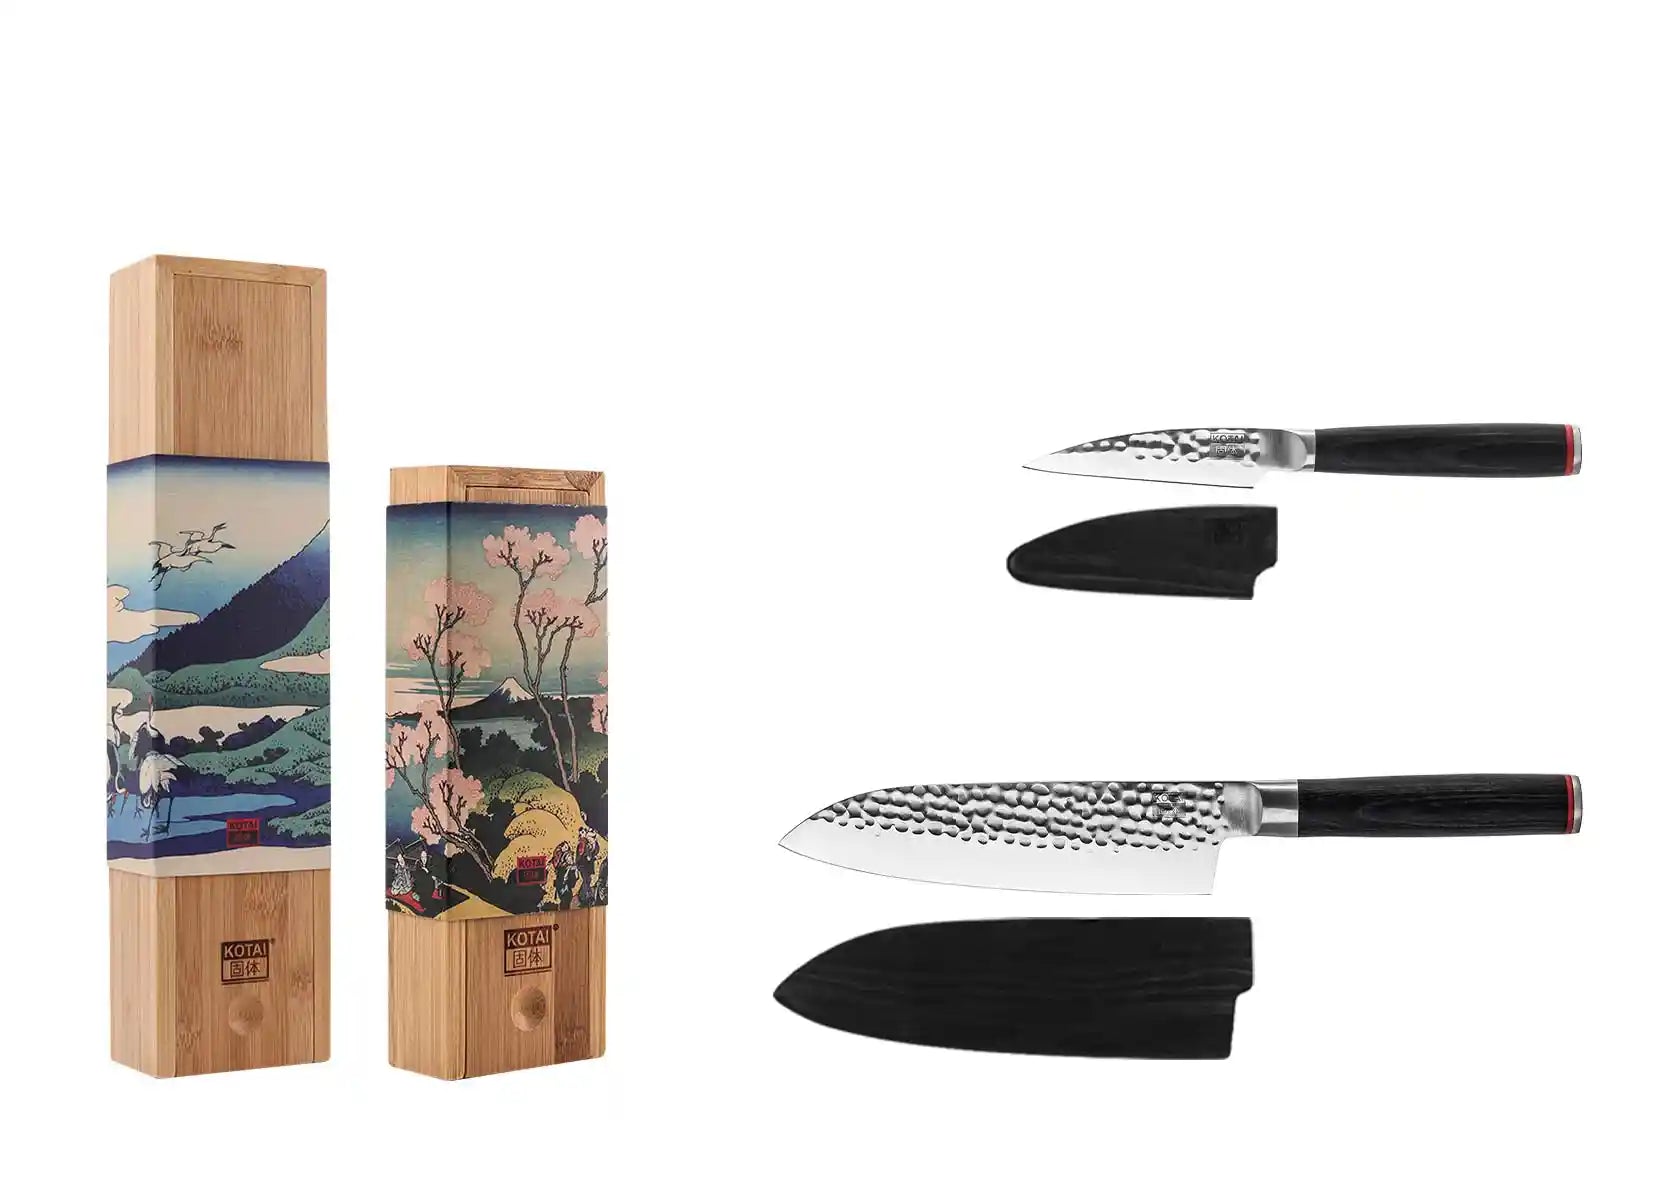 Starter 2-Piece Knife Set - Pakka Collection